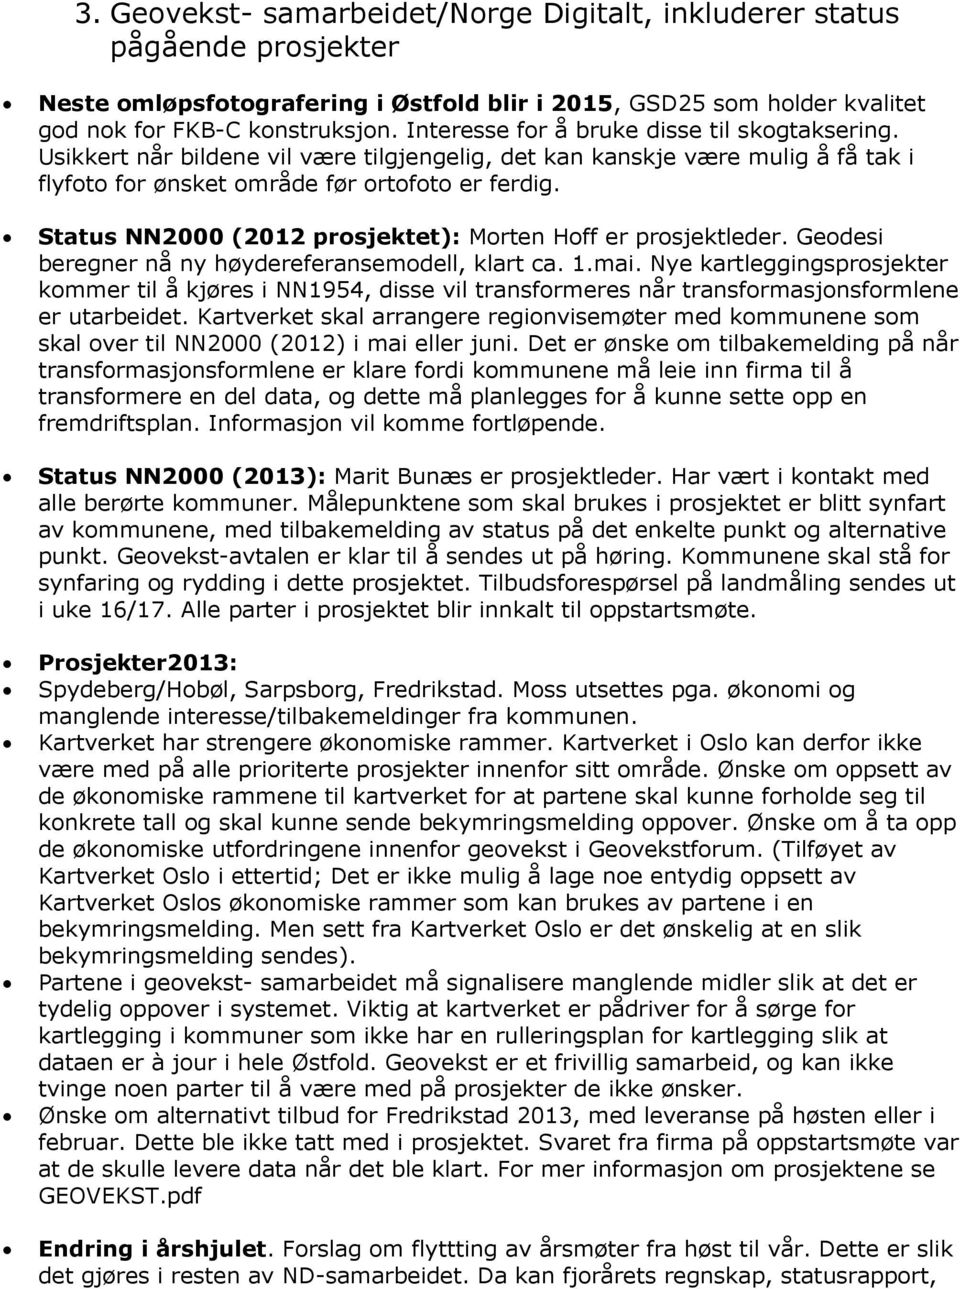 Status NN2000 (2012 prosjektet): Morten Hoff er prosjektleder. Geodesi beregner nå ny høydereferansemodell, klart ca. 1.mai.